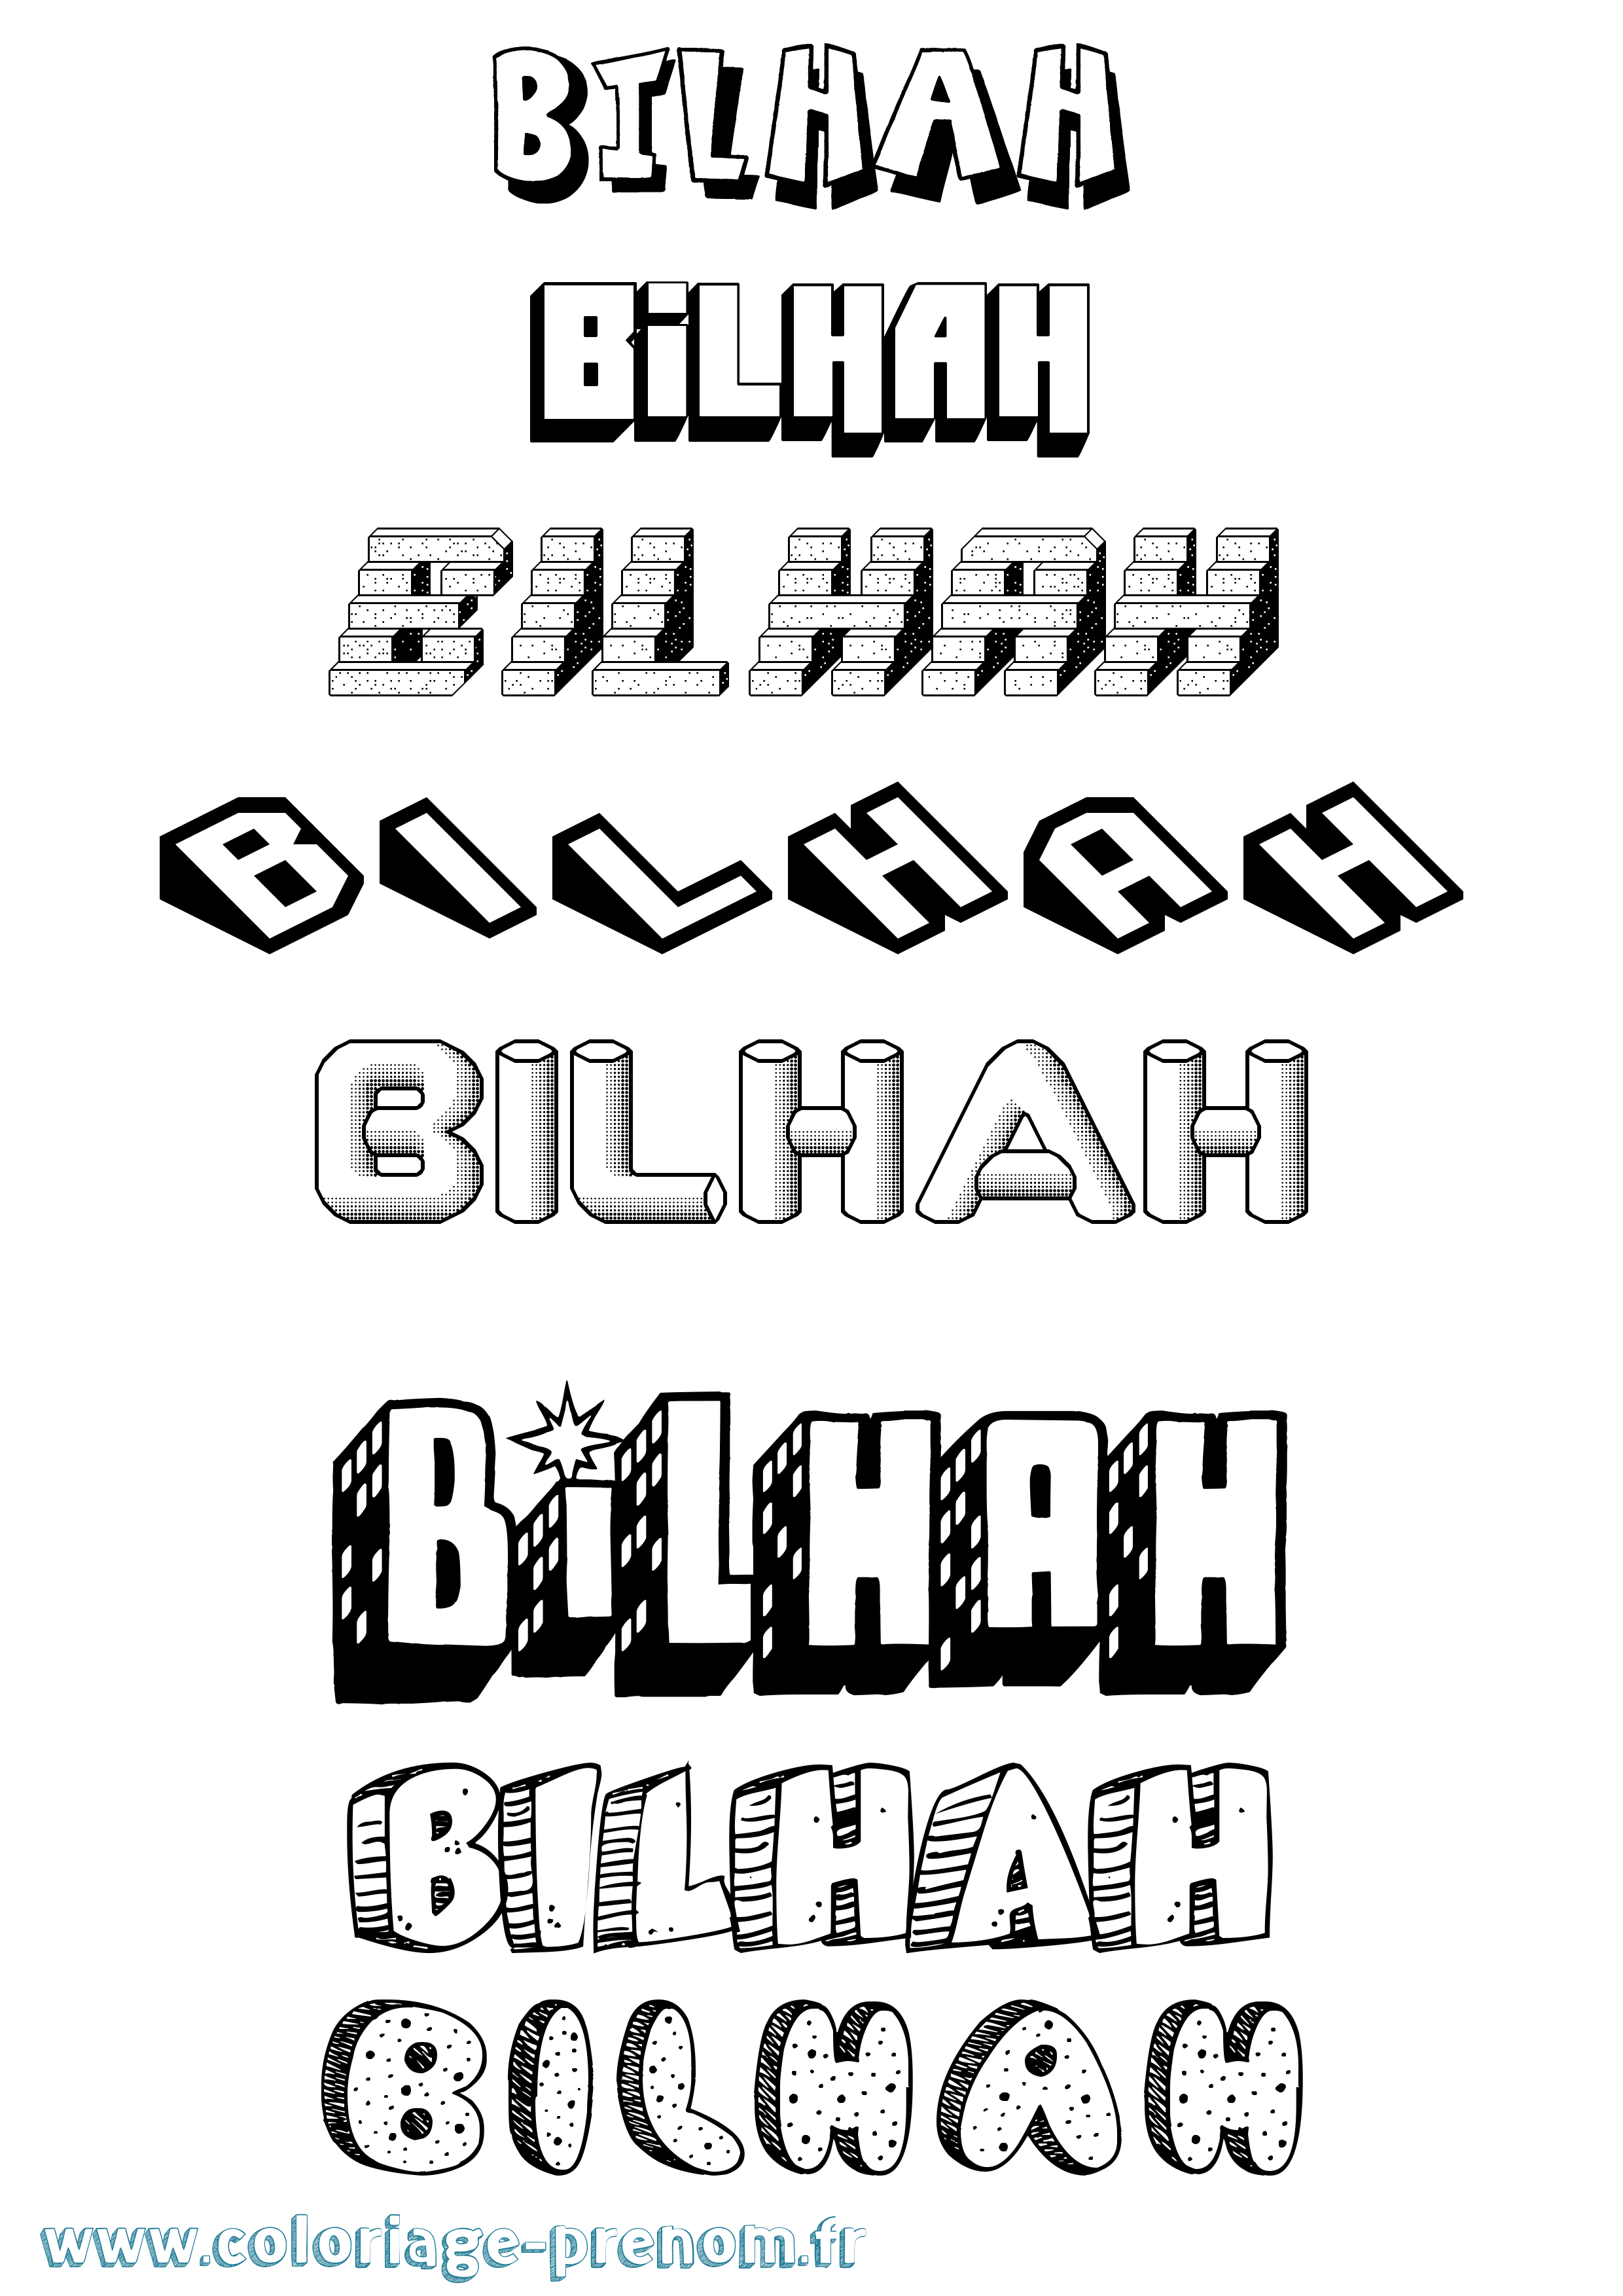 Coloriage prénom Bilhah Effet 3D